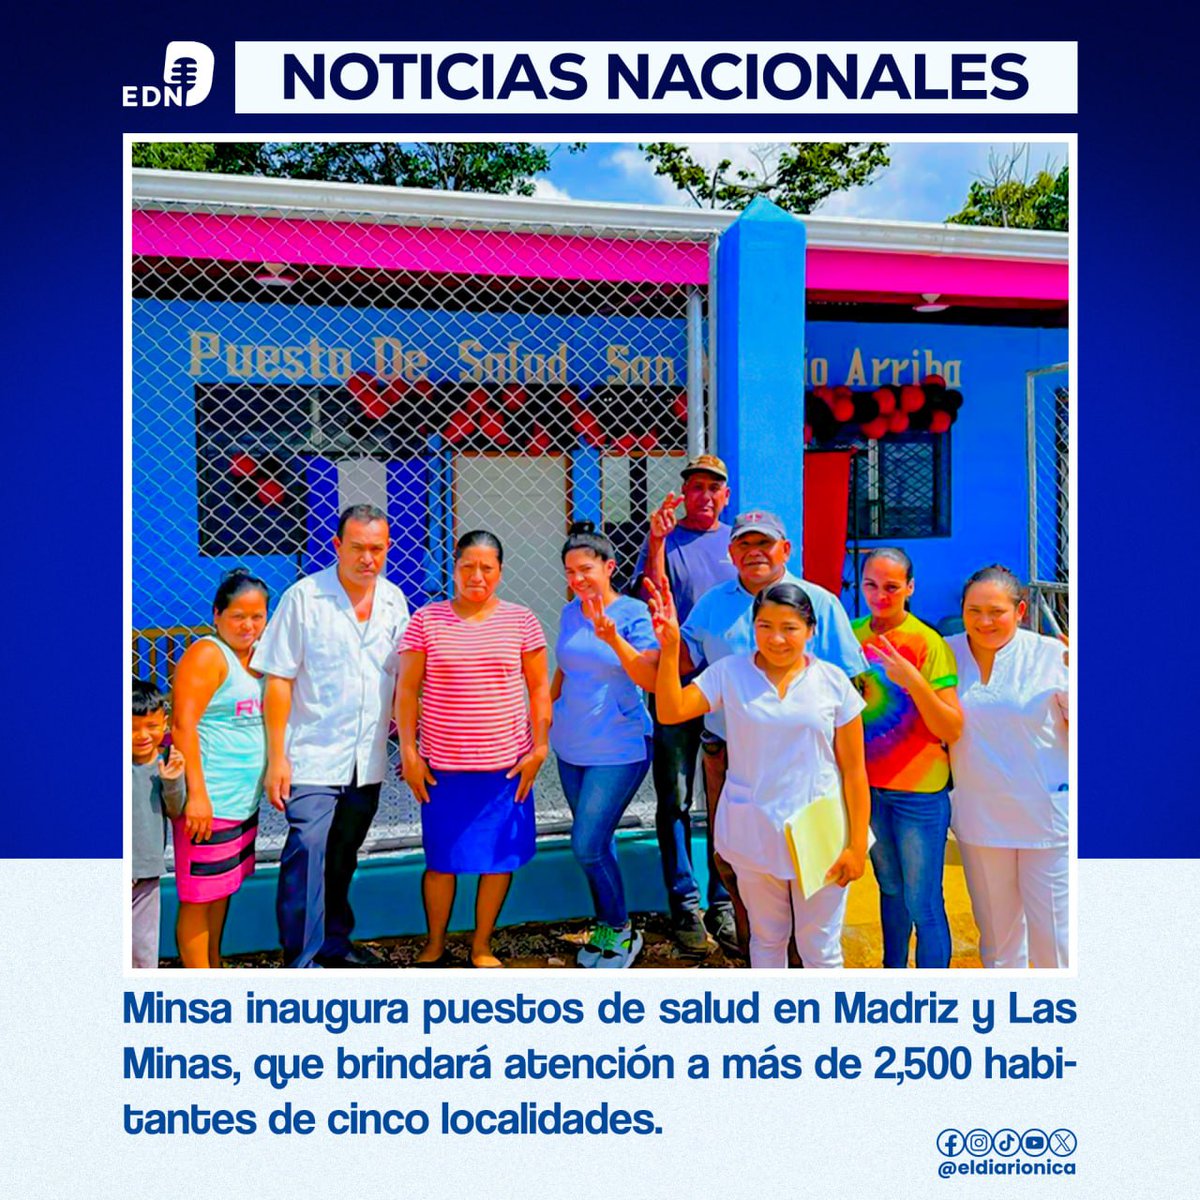 Con una inversión 2.7 millones de córdobas, se inaugura puesto de Salud Mirna González Rocha, de la Comunidad San Antonio Arriba, Municipio San Juan de Río Coco, Madriz. #Nicaragua